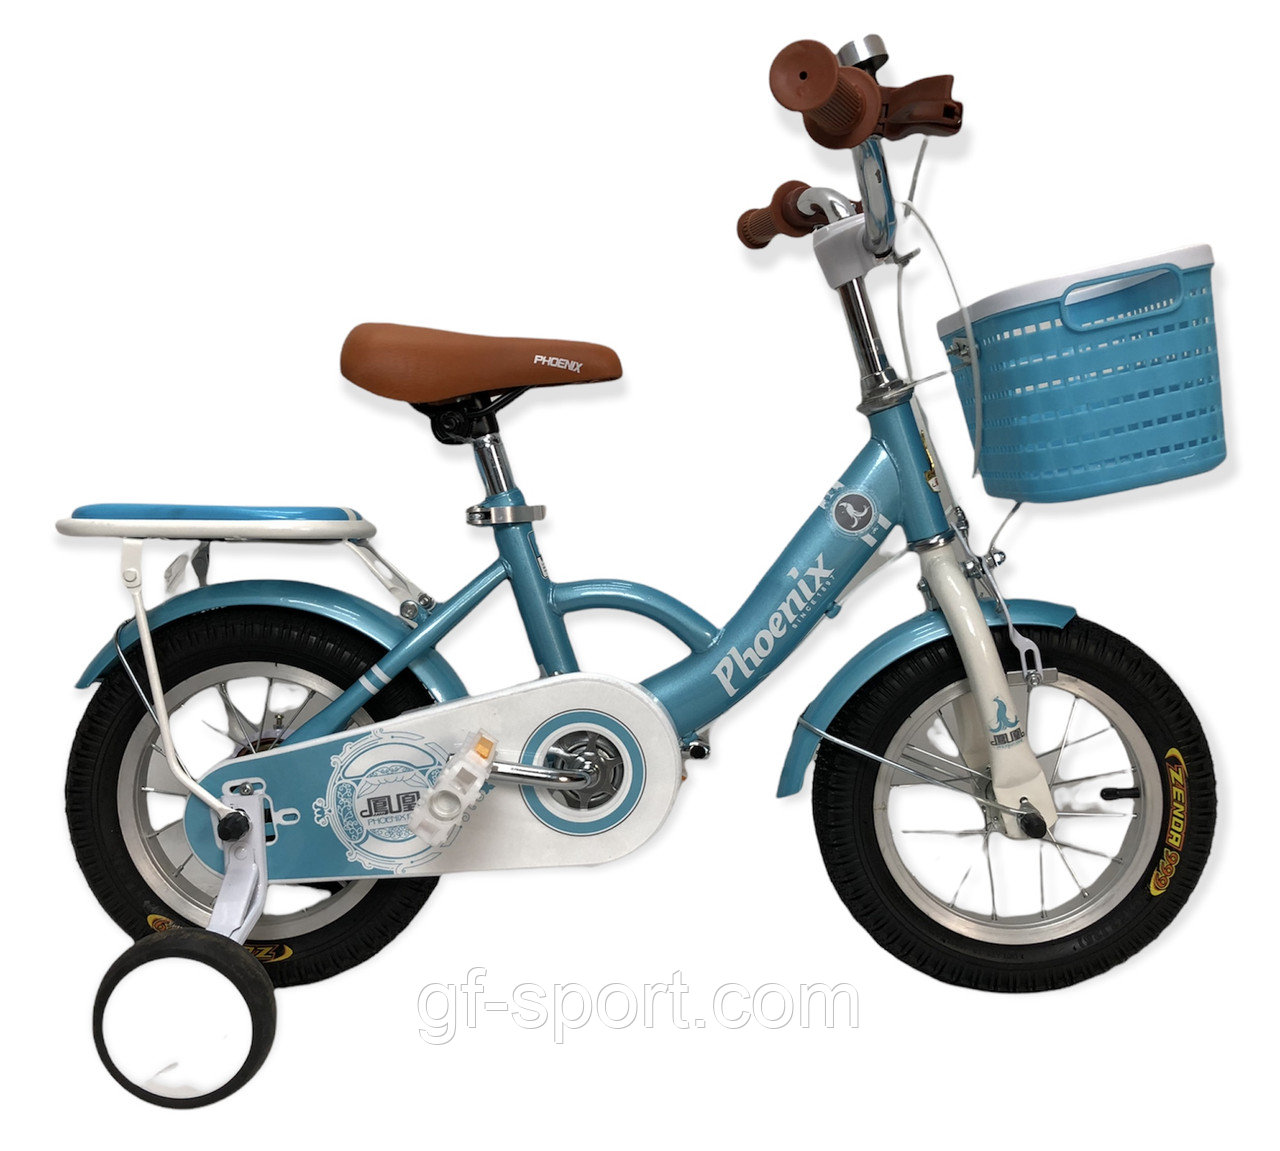 Велосипед Phoenix голубой оригинал детский с холостым ходом 12 размер (509-12)